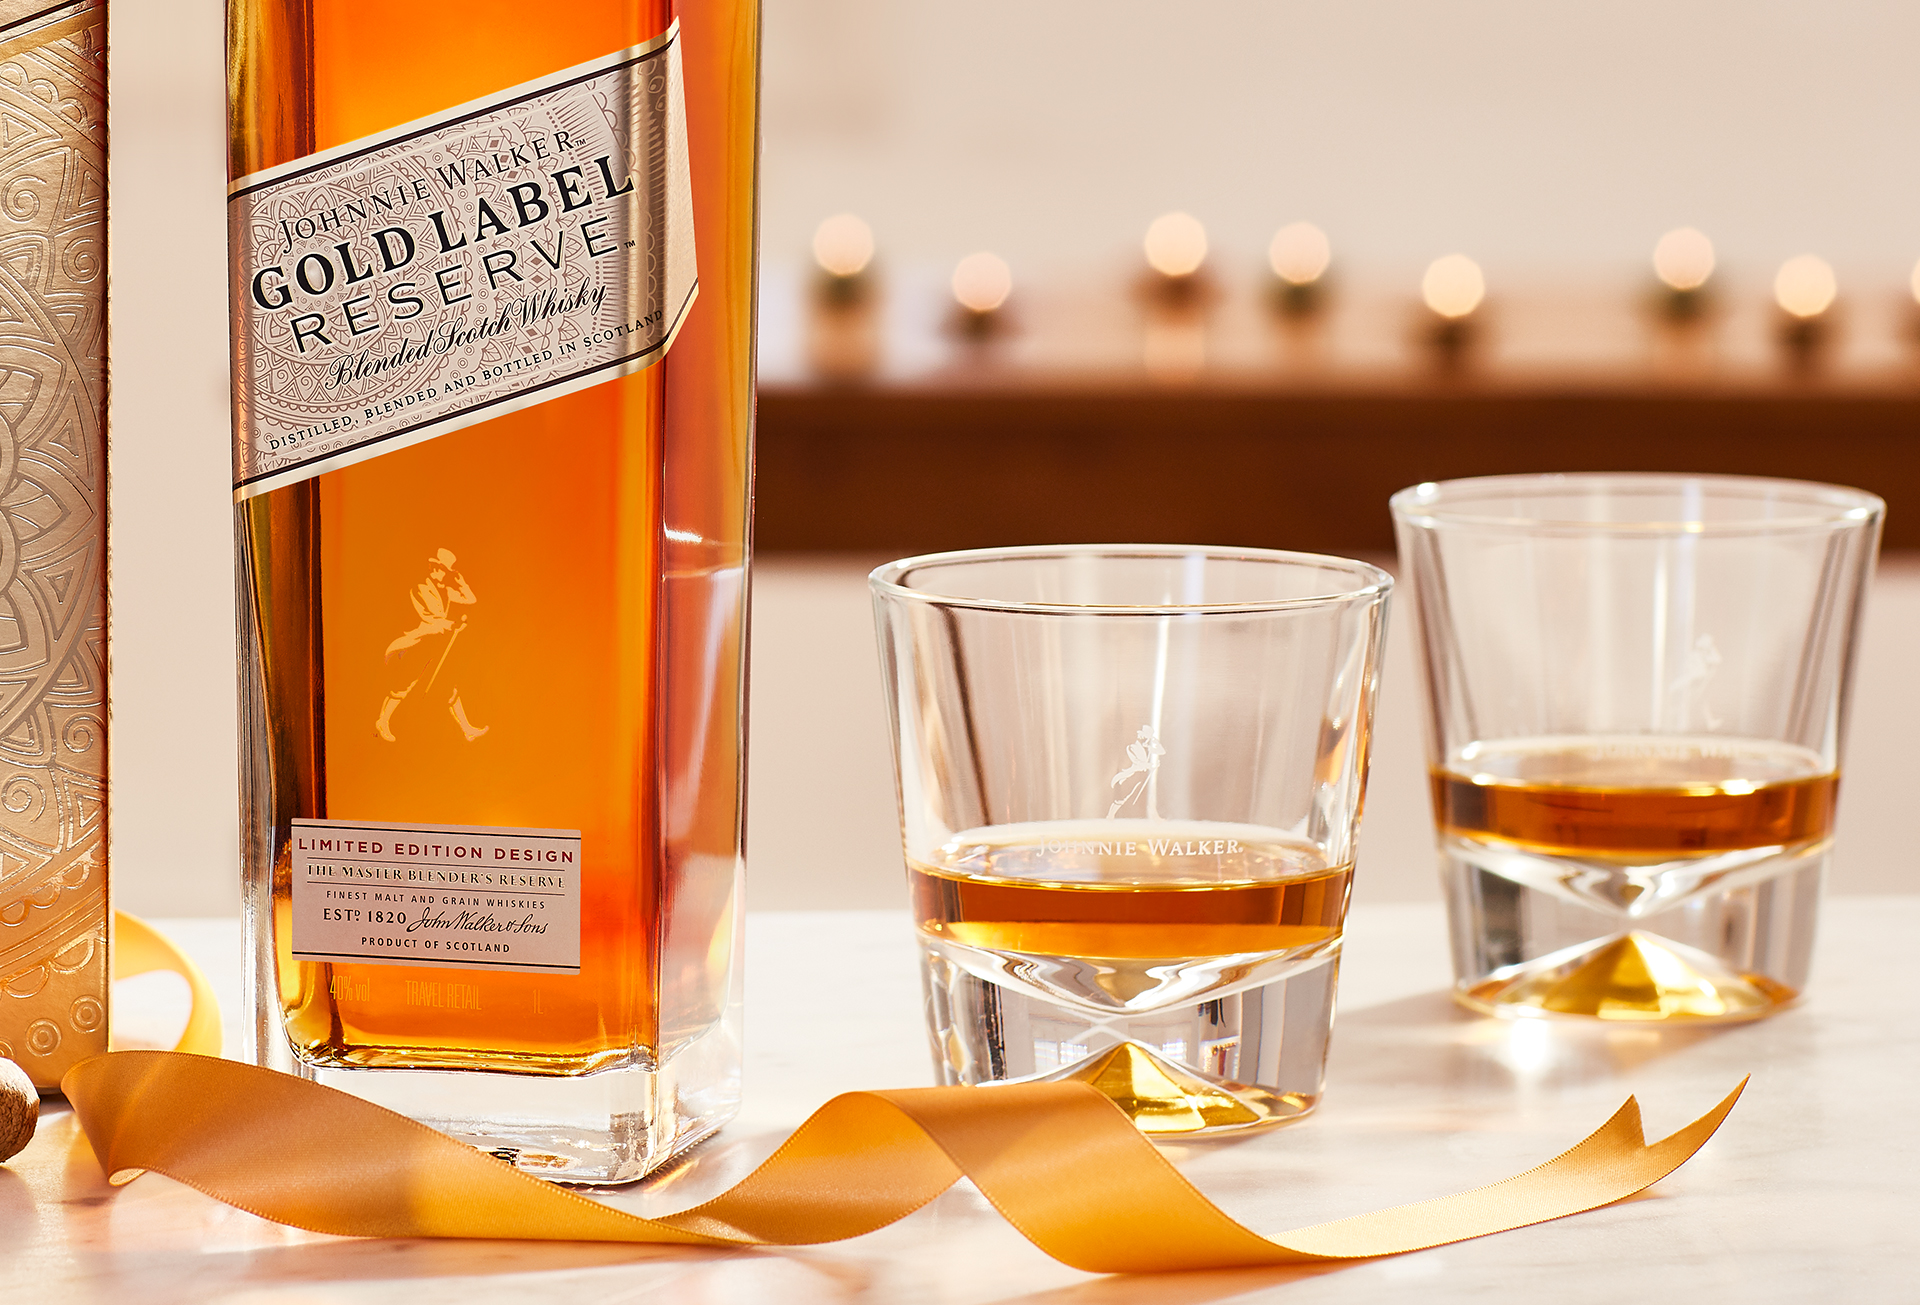 Garrafa da bebida Johnnie Walker Gold Label Reserve, com dois copos baixos de whisky e uma fita dourada.